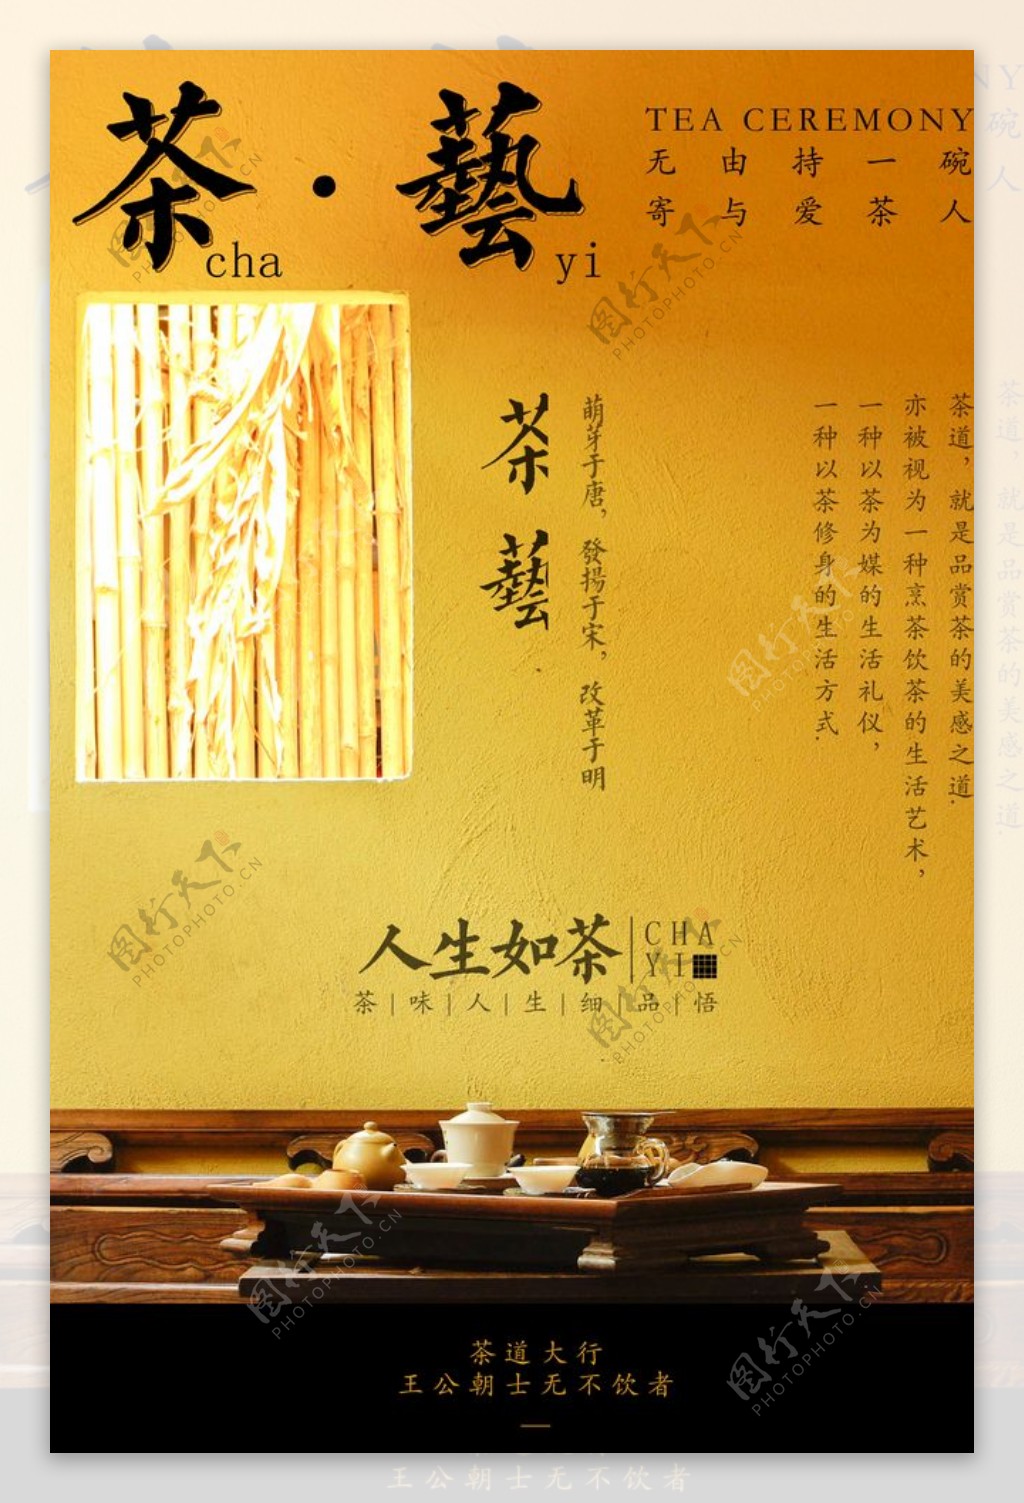 黄色中国风茶艺海报